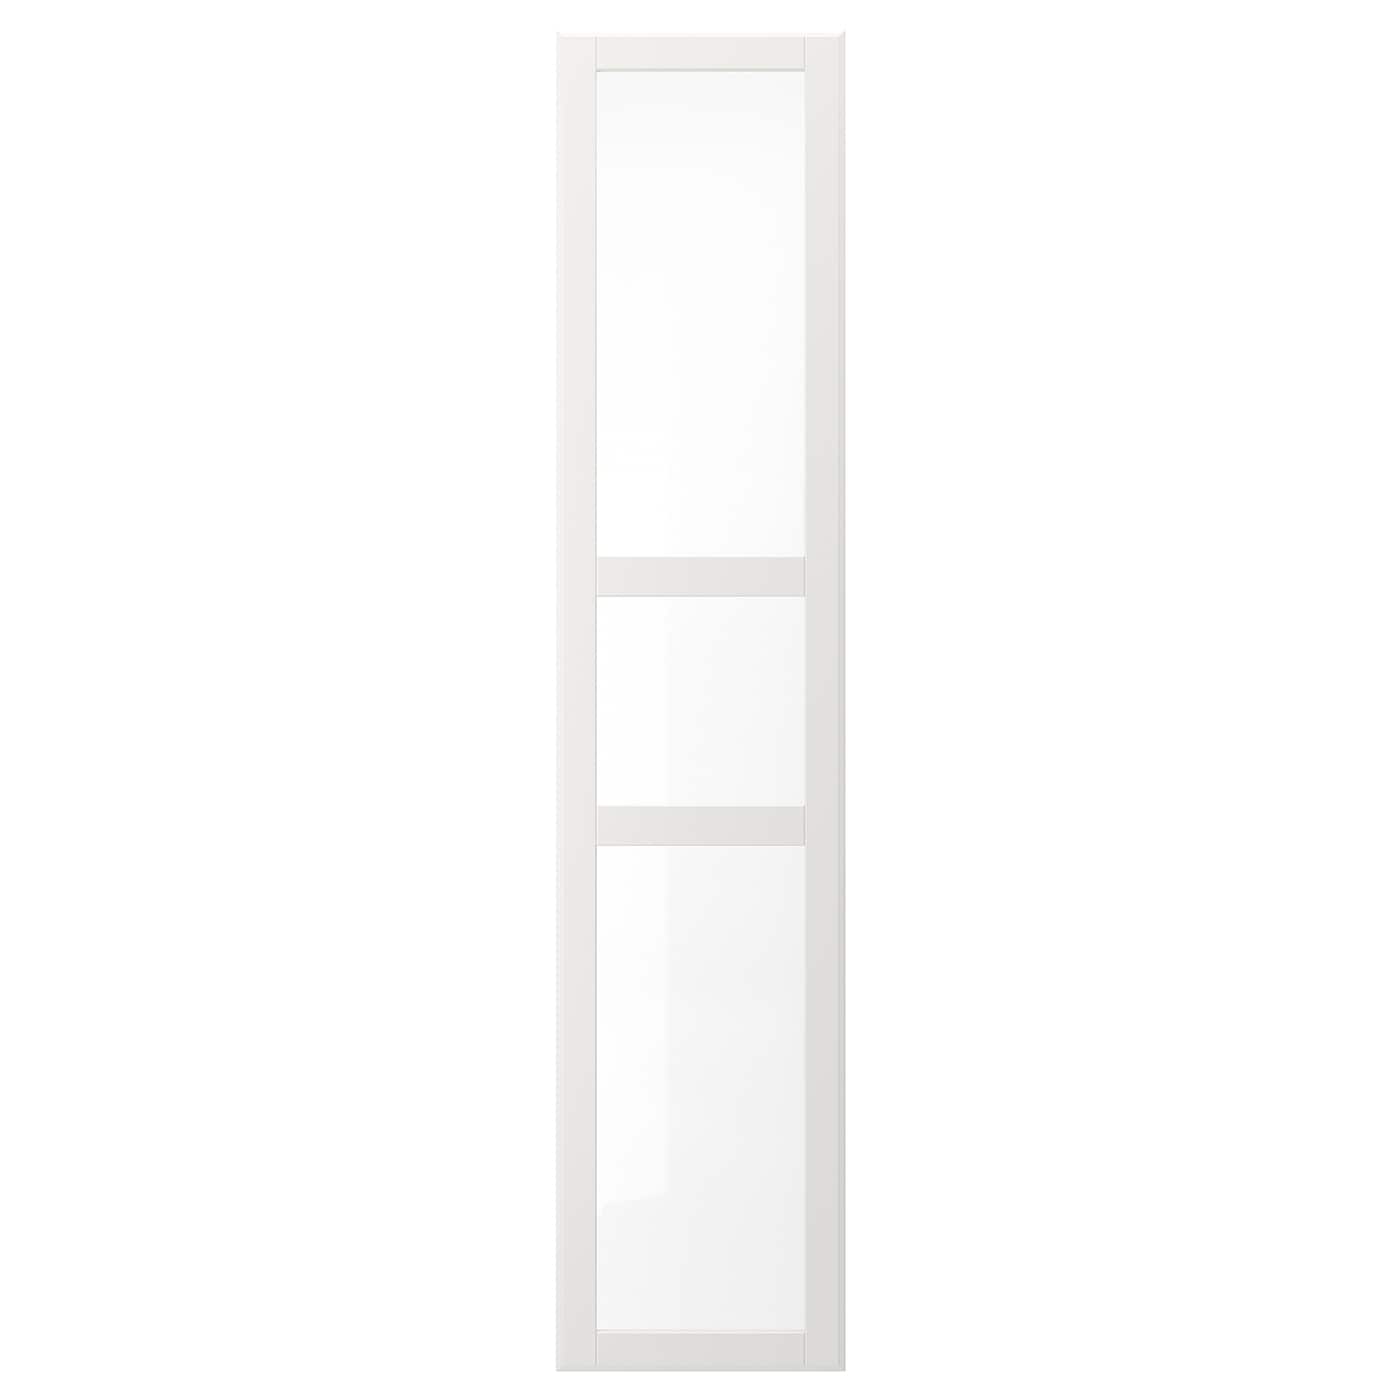 Дверь с петлями - TYSSEDAL  IKEA/  ТИССЕДАЛЬ ИКЕА, 229х50 см,  прозрачный/белый